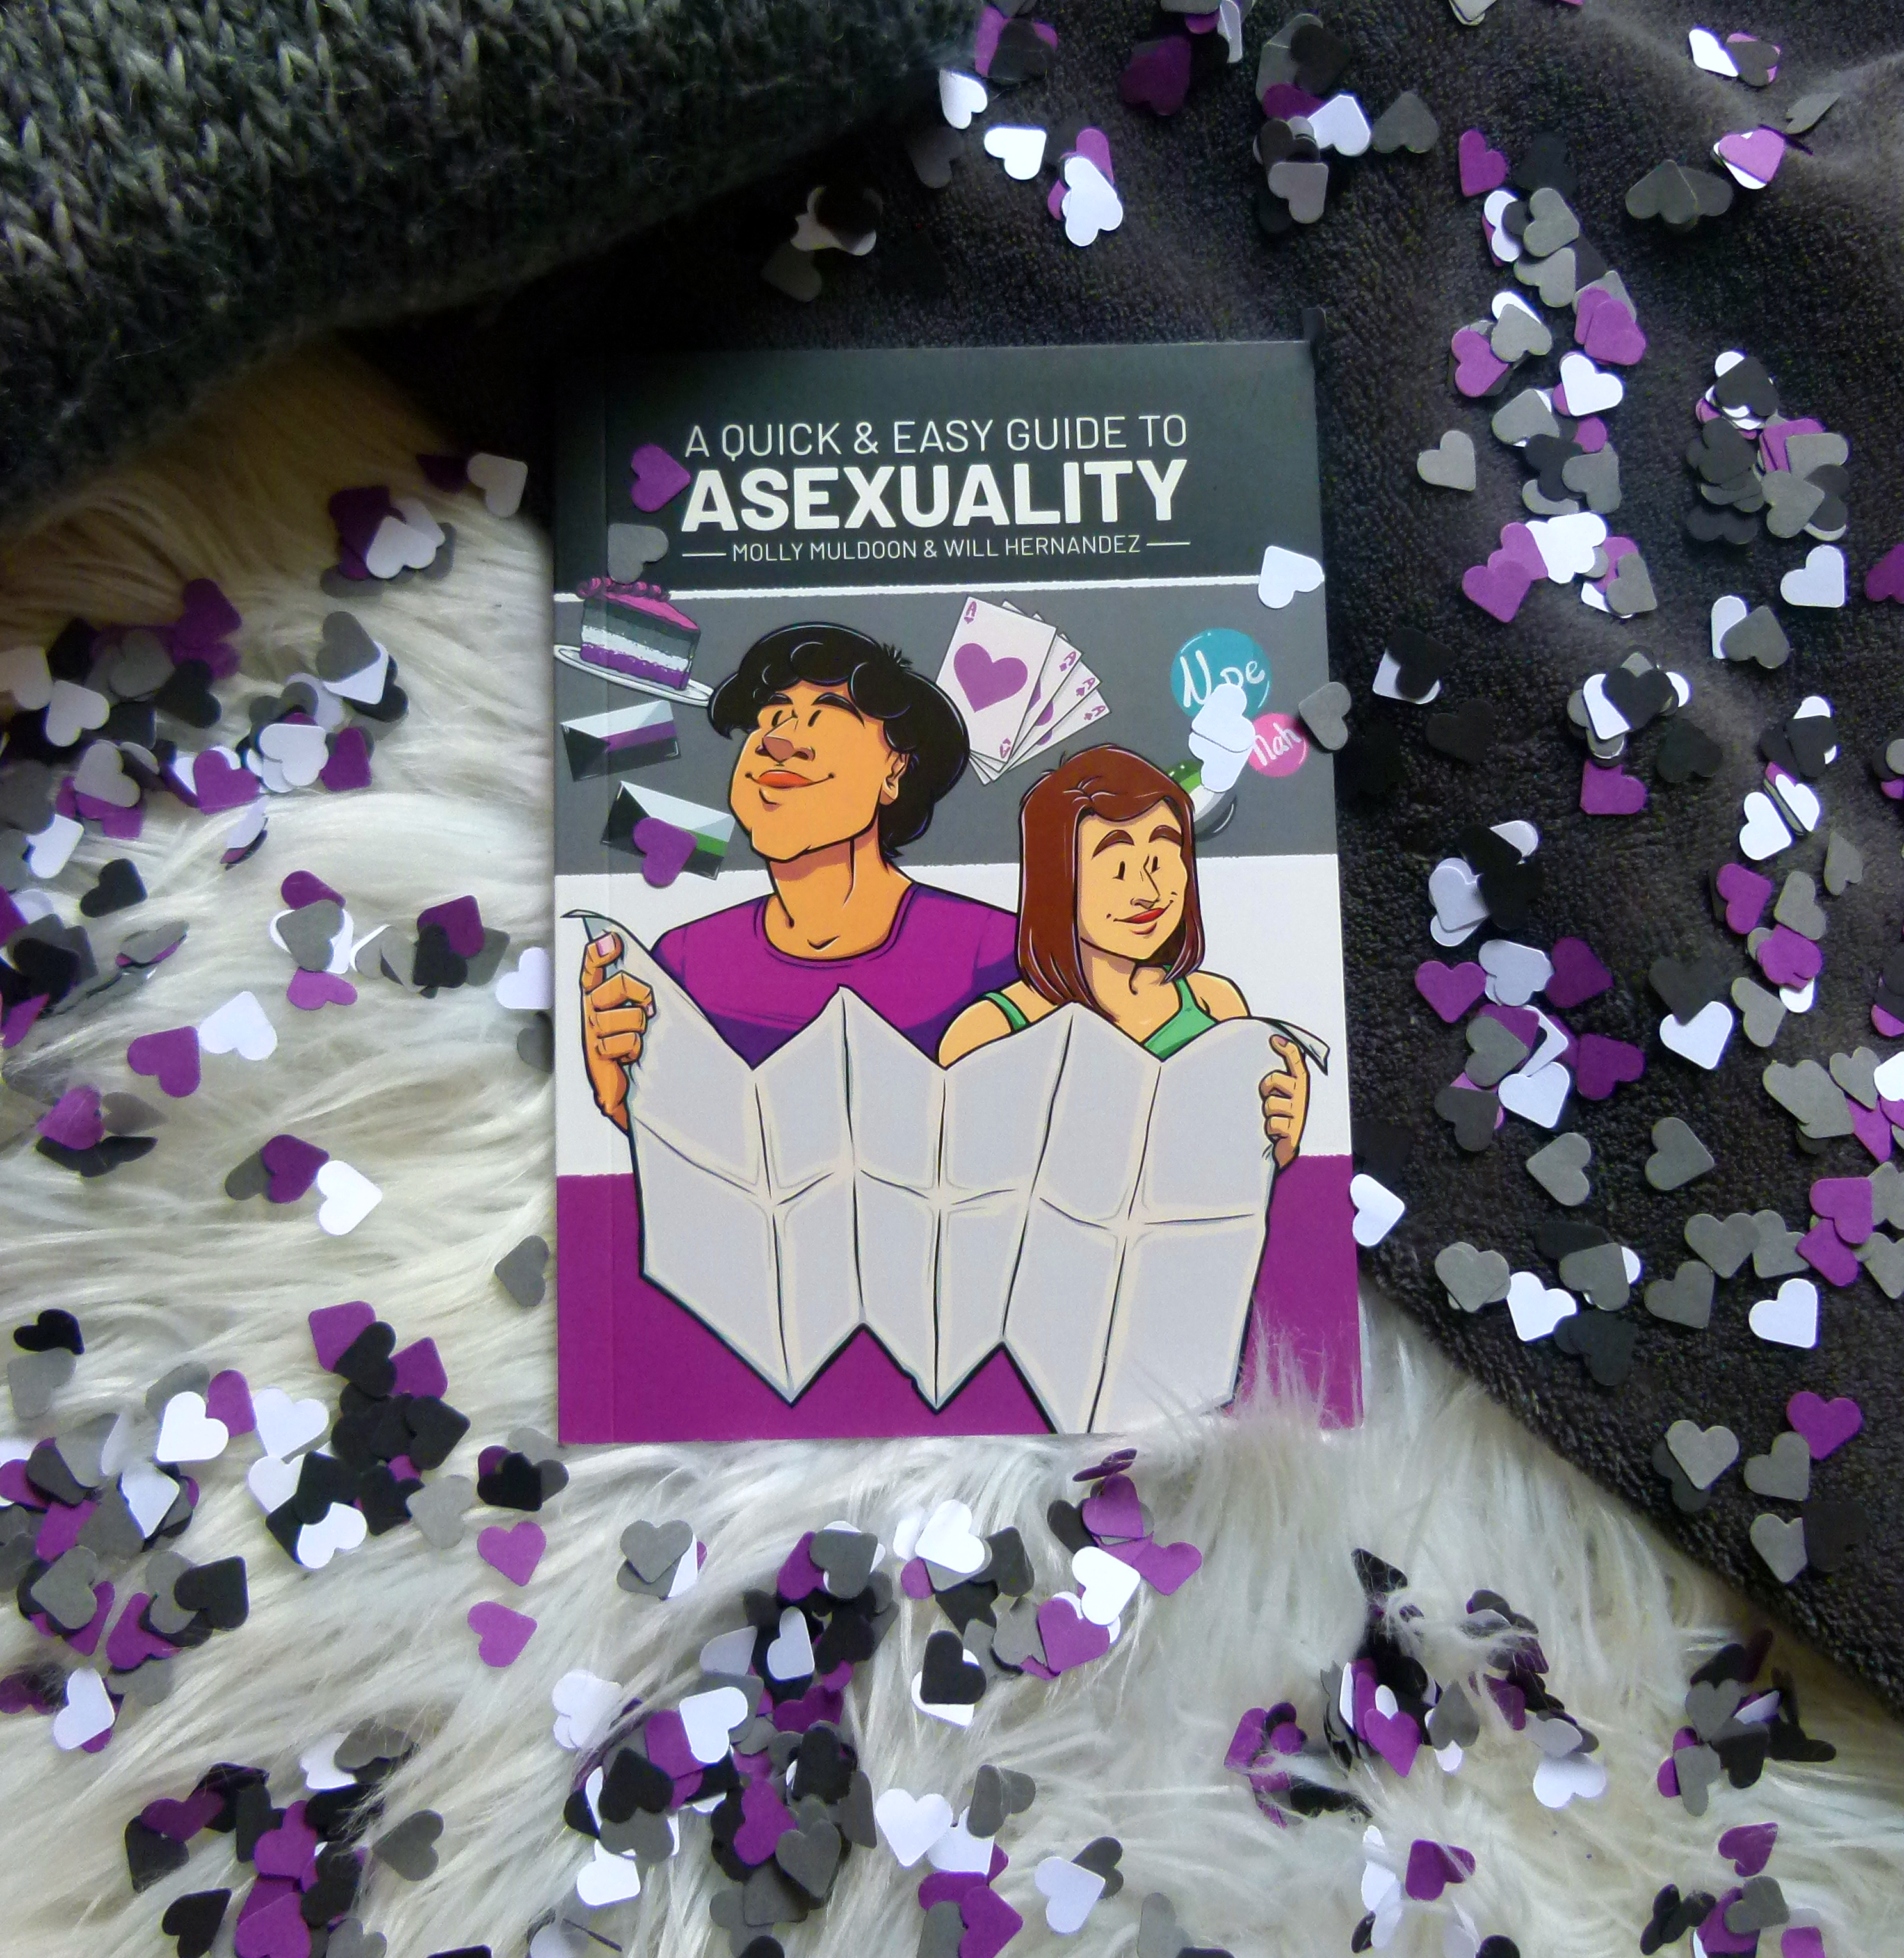 Das Buch liegt auf zwei verschiedenen Decken, weiß und schwarz. Um das Buch verteilt liegen unzählige ausgestanzte kleine Papierherzen in den Farben schwarz, grau, weiß und lila (der Asexuality-Flagge entsprechend).